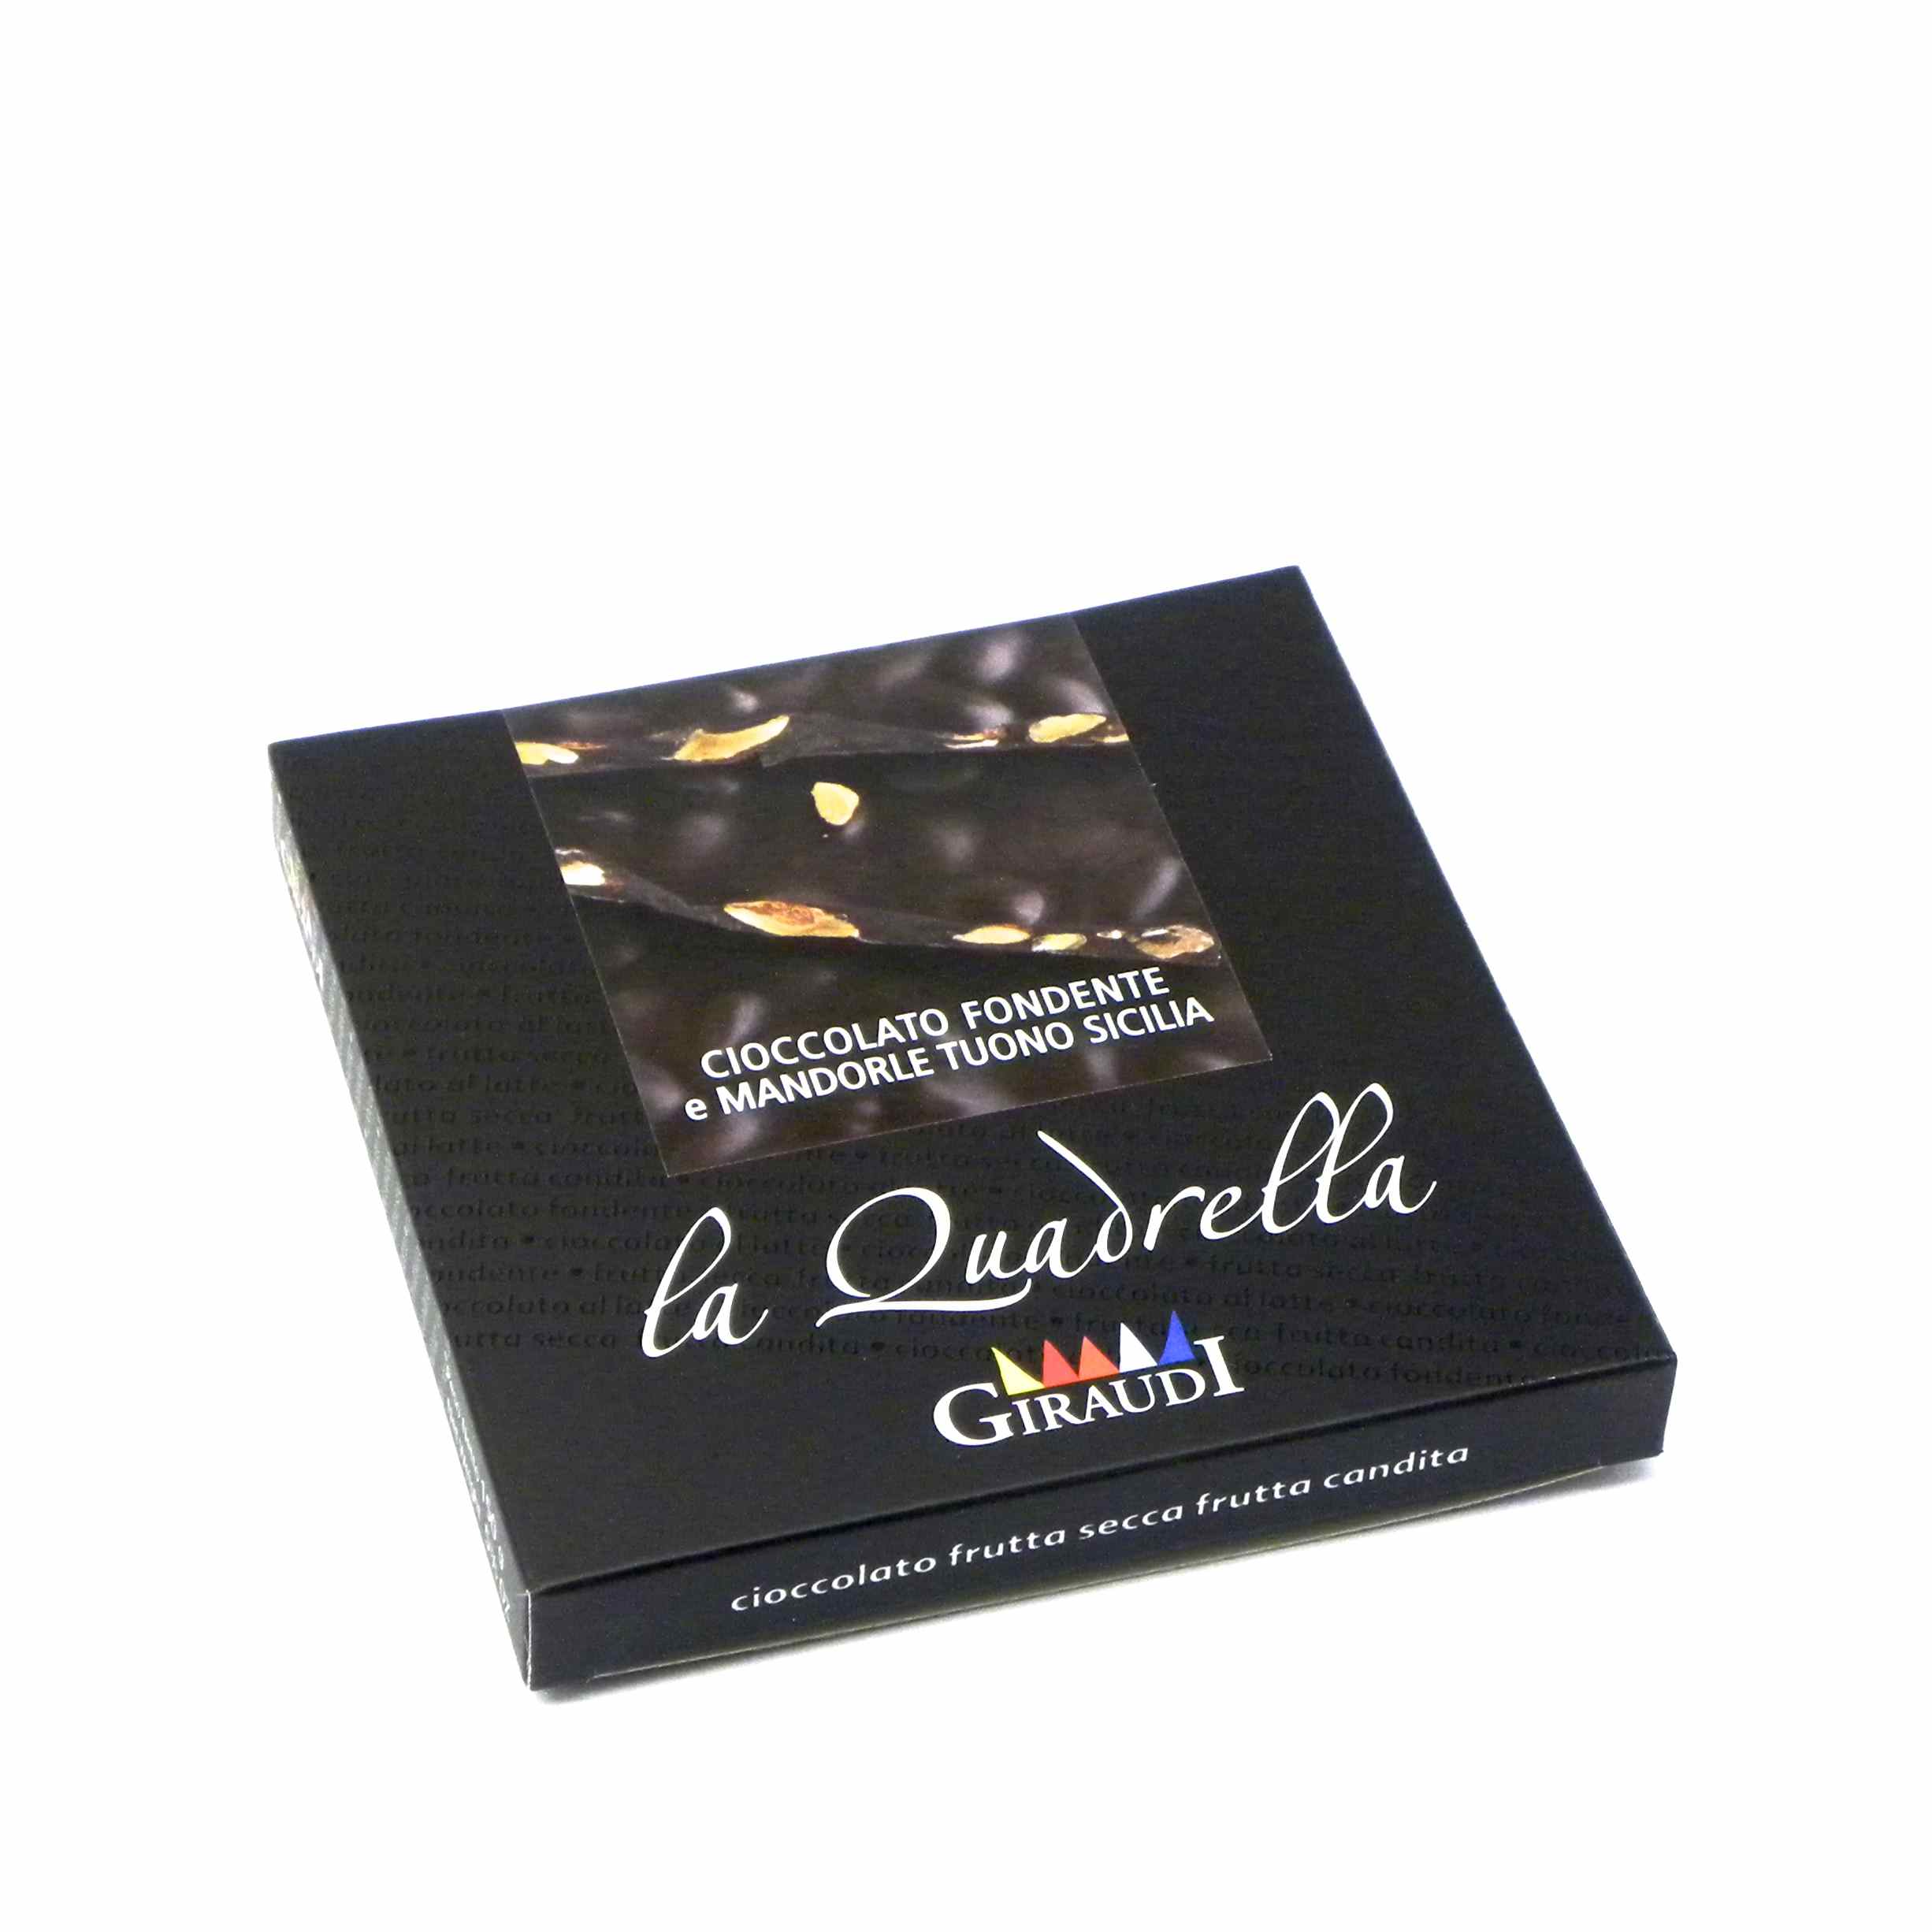 Giraudi quadrella mandorle cioccolato fondente – Giraudi quadrella dark chocolate almonds – Gustorotondo – Italian food boutique